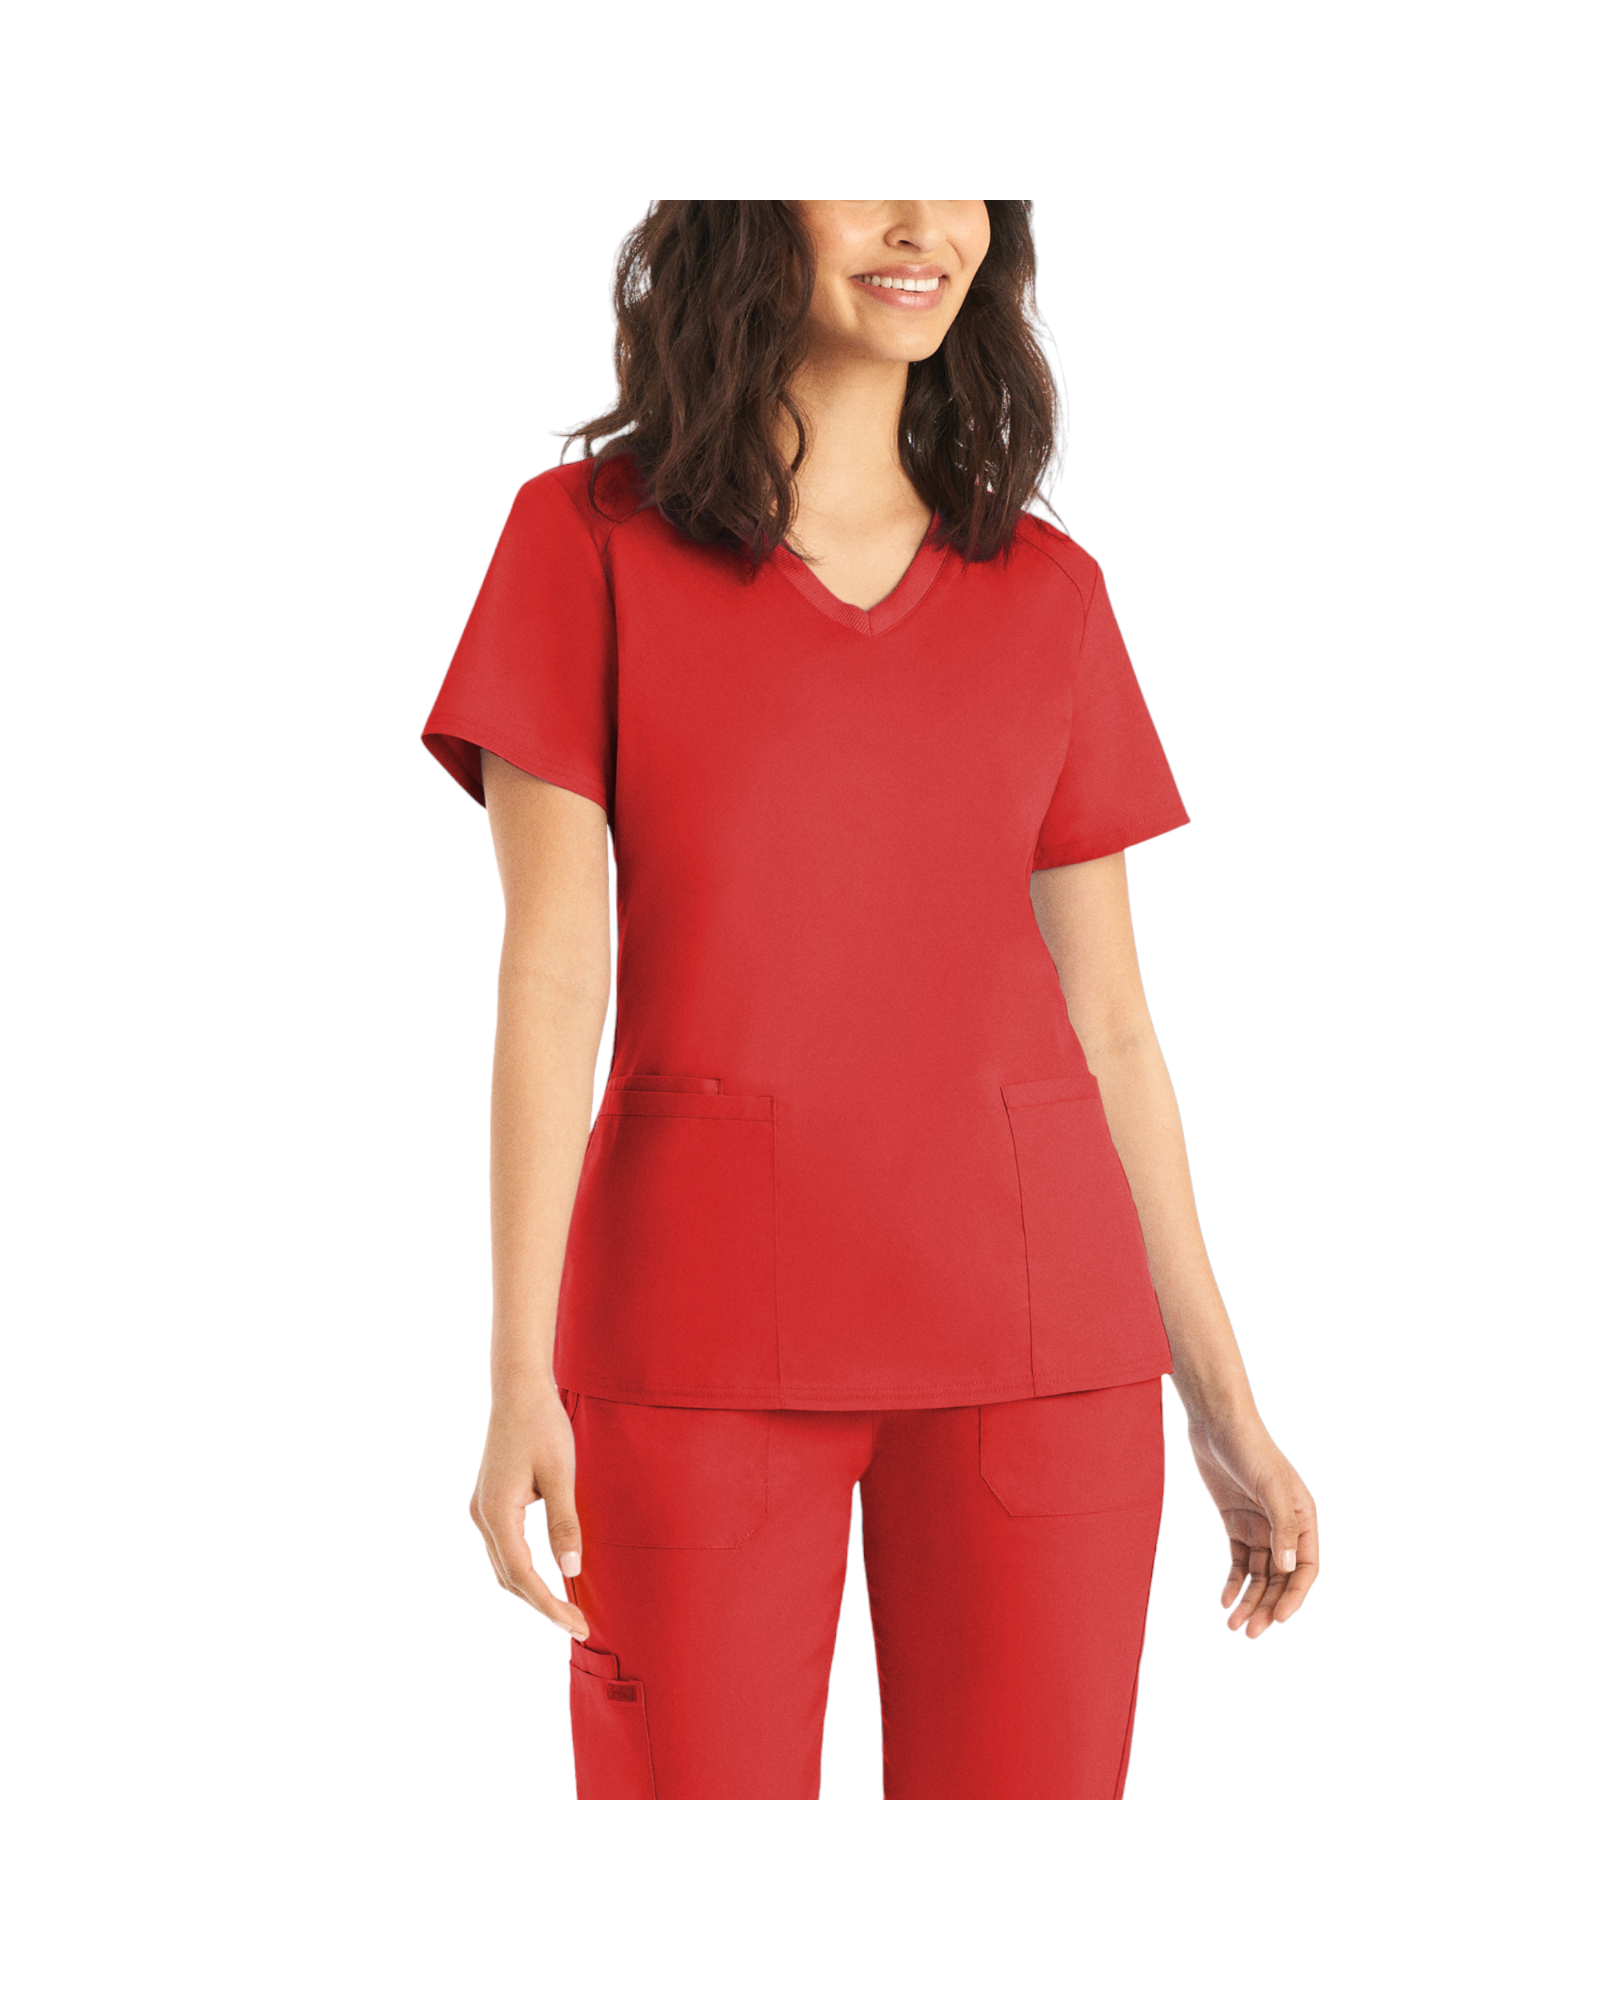 Uniforme de marque landau pour femmes taille plus. Travailleuses du domaine de la santé. LT105-OS couleur True red, col en V.